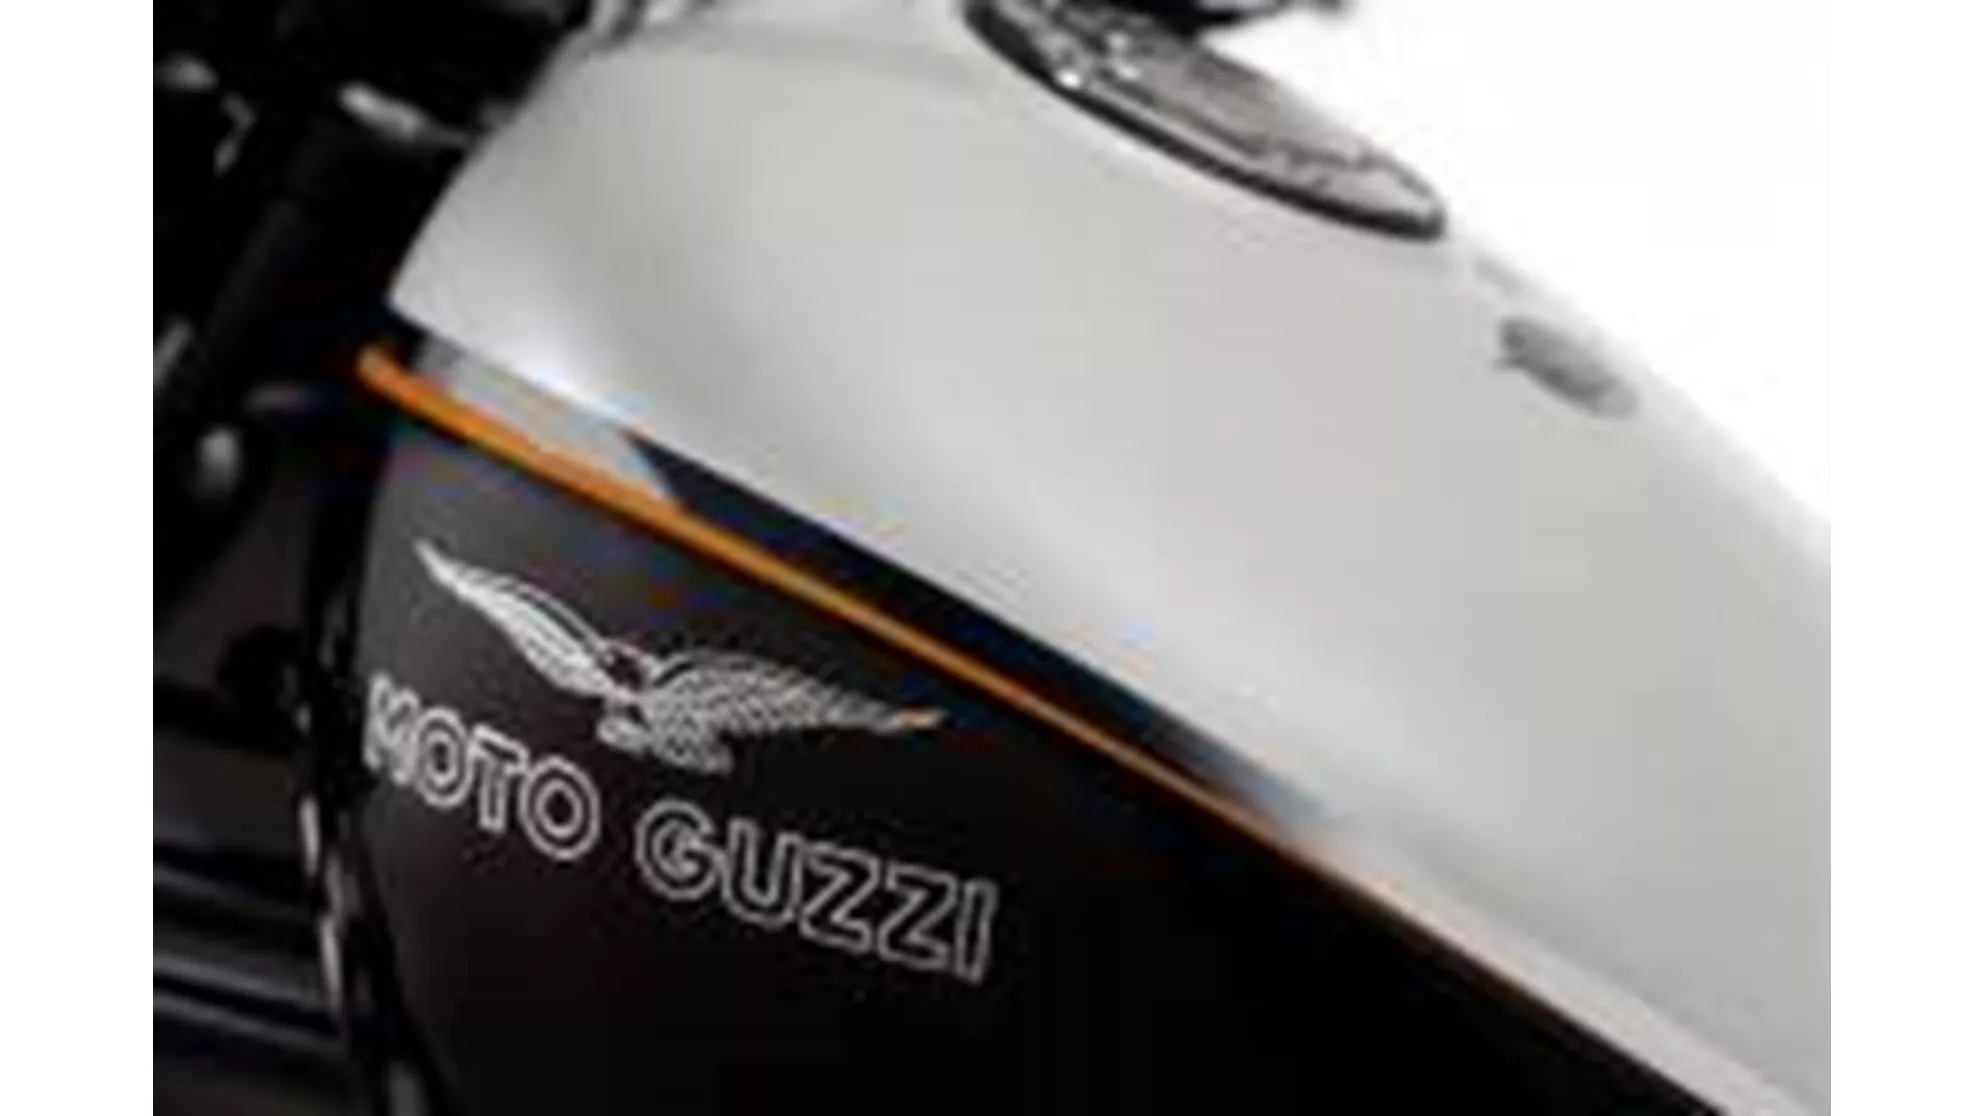 Moto Guzzi Nevada 750 Anniversario - Image 4